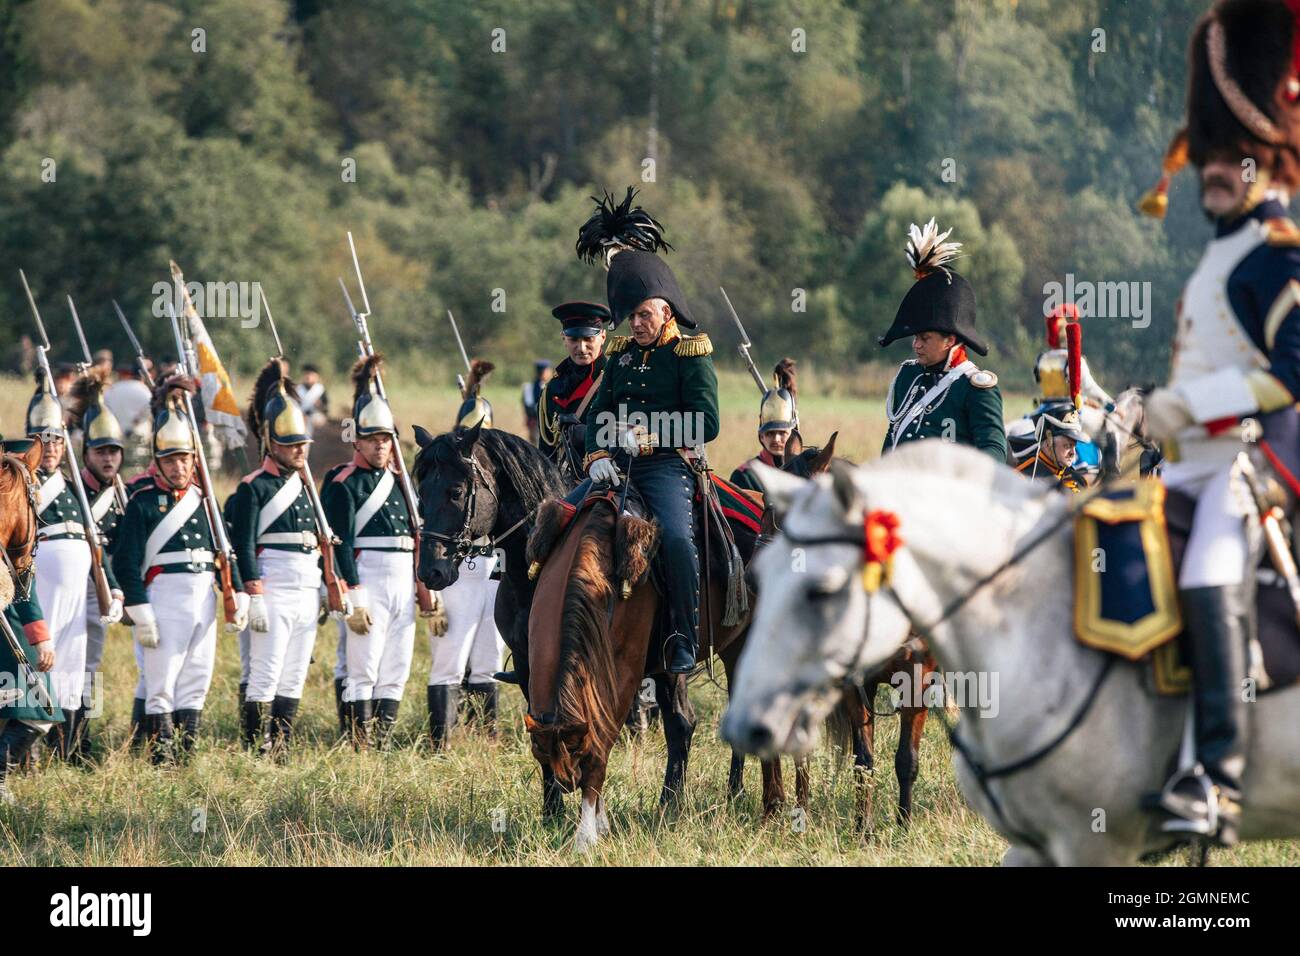 BORODINO, RUSSIA - Sep 01, 2018: The reenactment of the Battle of Borodino in Russia Stock Photo